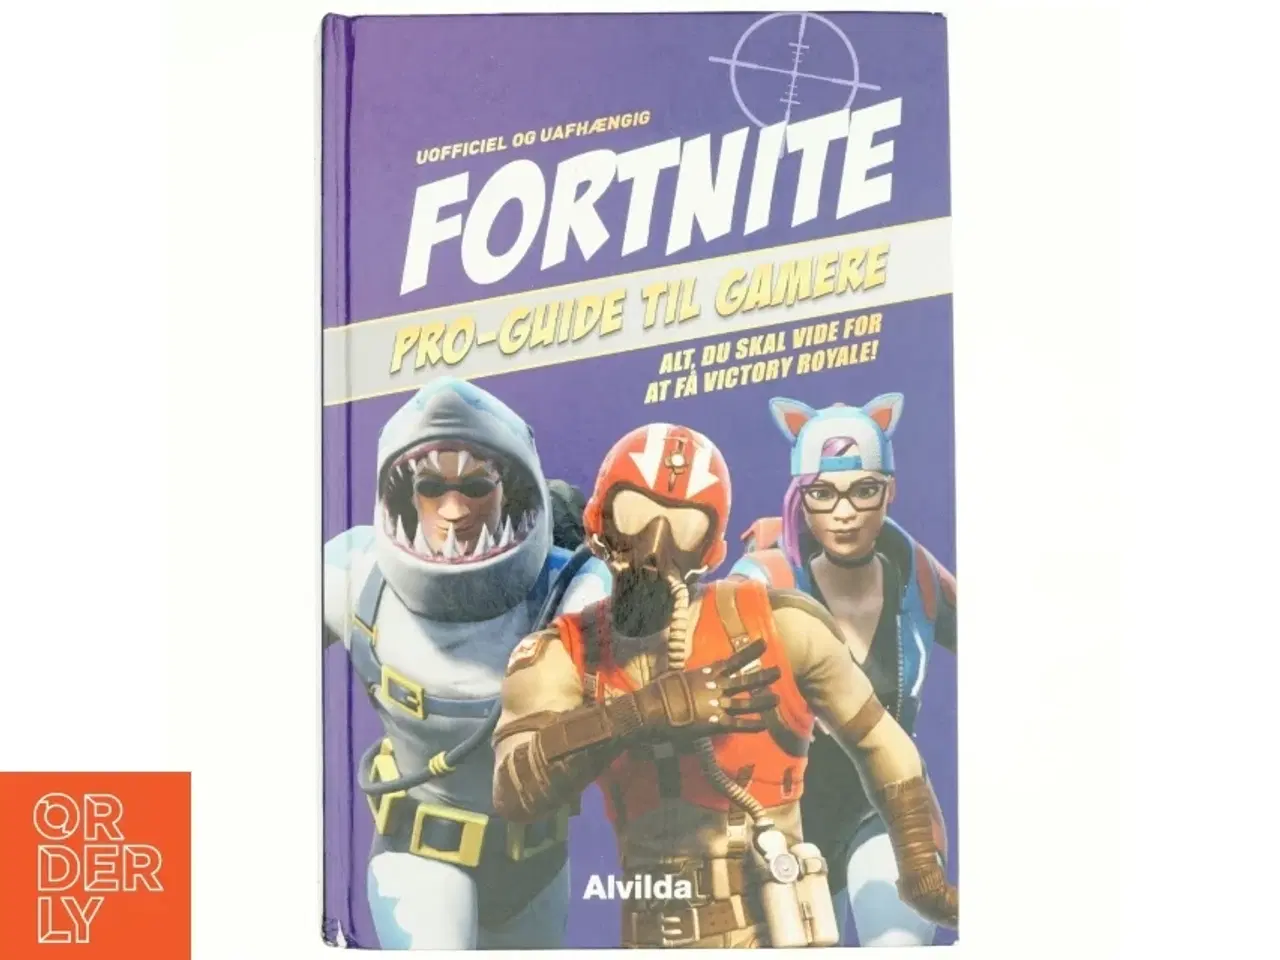 Billede 1 - Fortnite : pro-guide til gamere : alt, du skal vide for at få Victory Royale! : uofficel og uafhængig (Pro-guide til gamere) af Kevin Pettman (Bog)